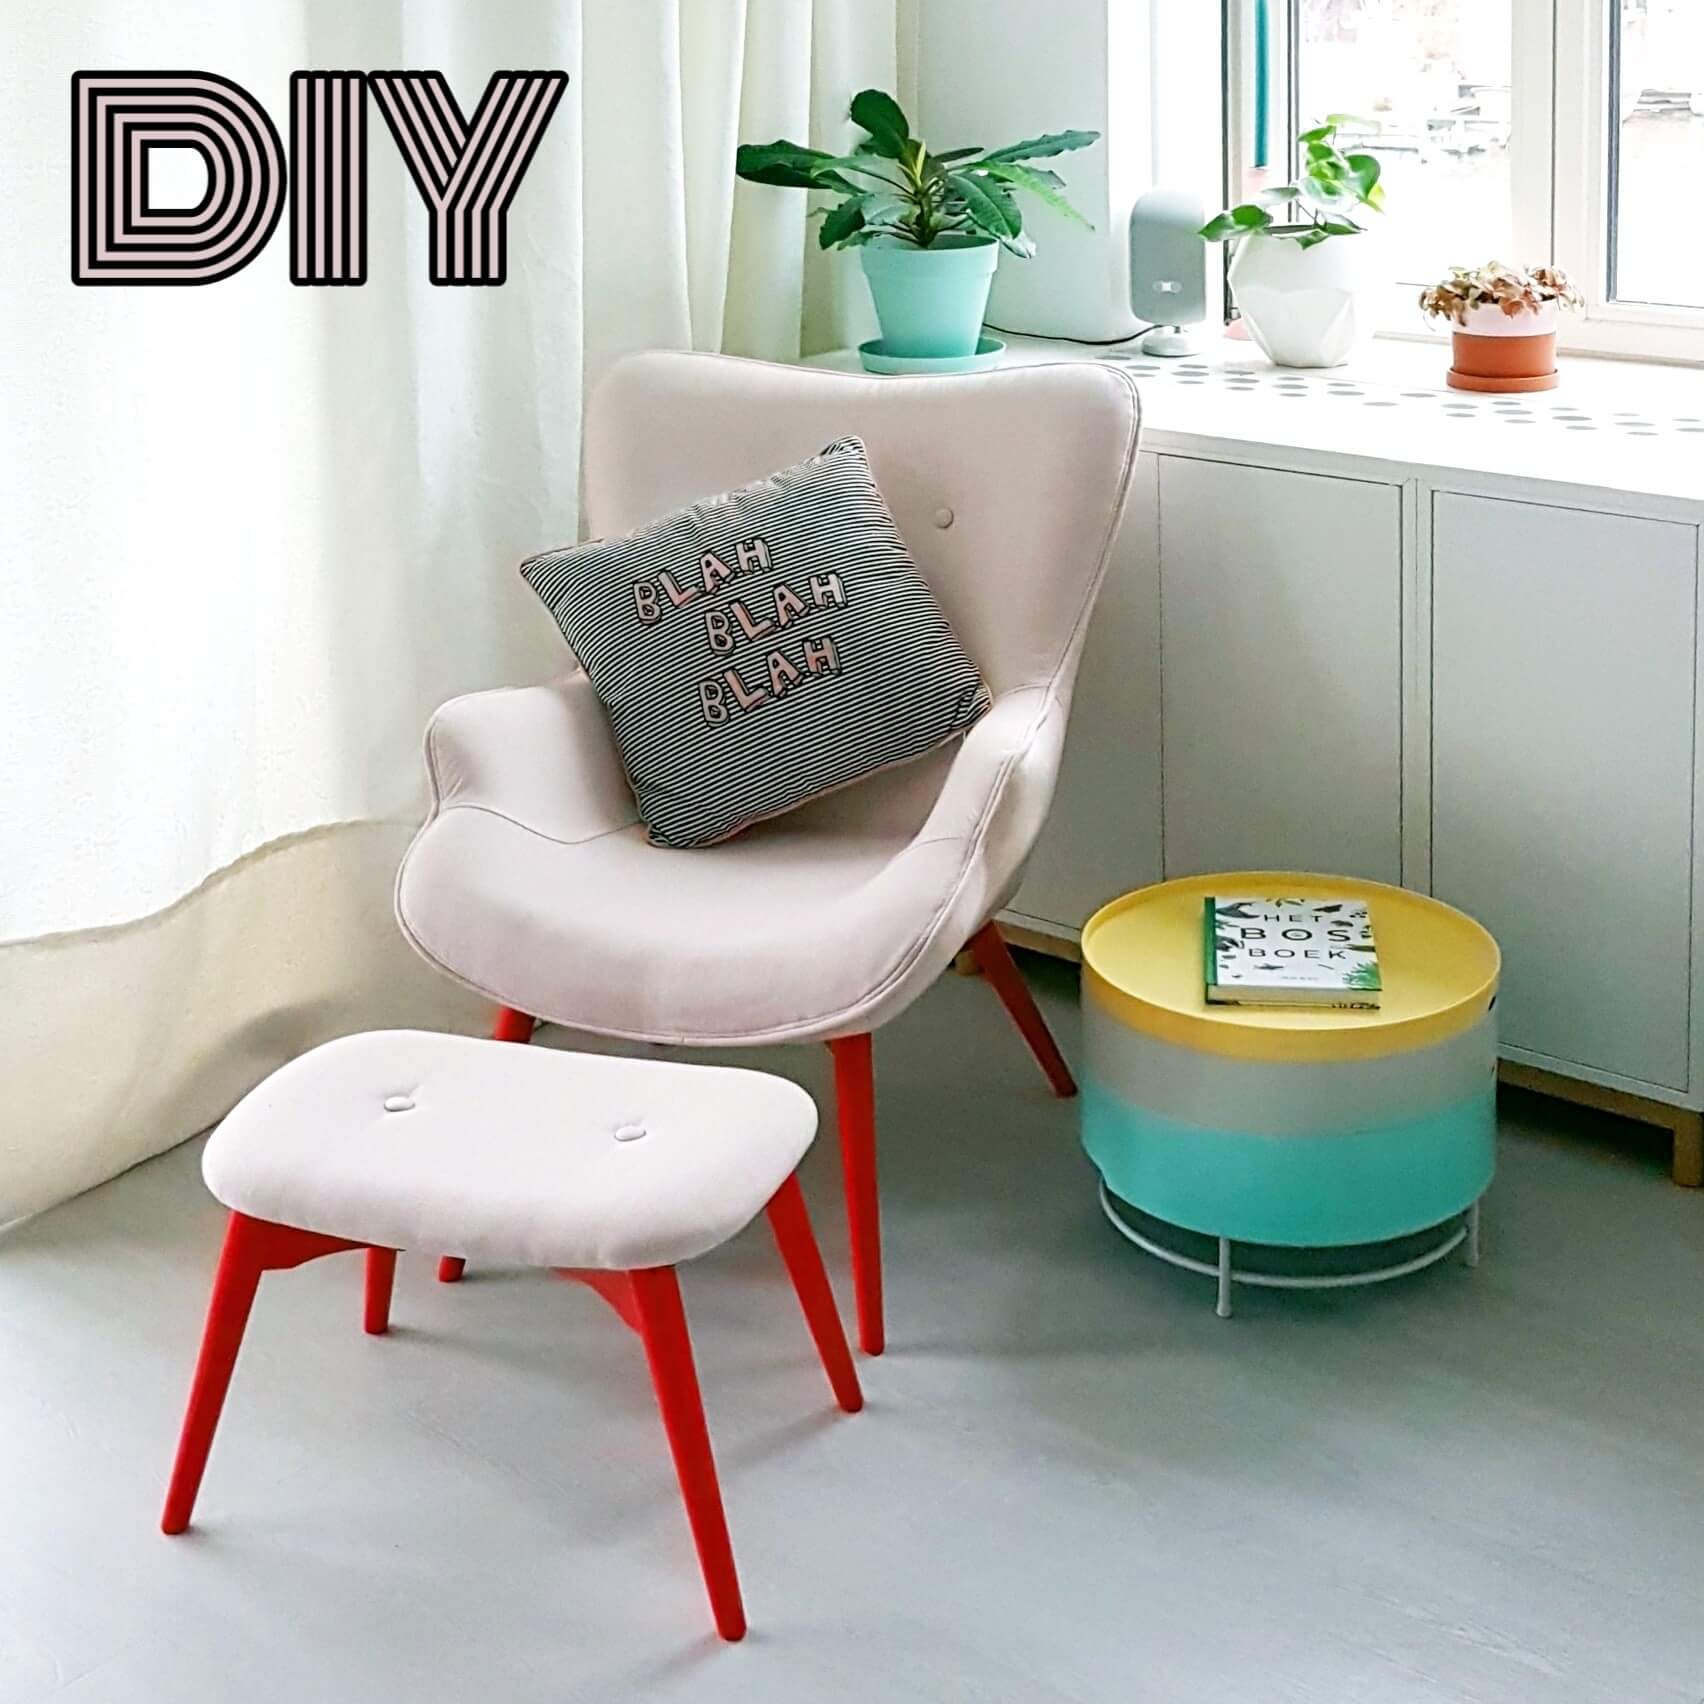 Uitsteken Elektronisch meubilair DIY: kleurrijke loungestoel voor de woonkamer, kinderkamer of babykamer -  Leuk met kids Leuk met kids